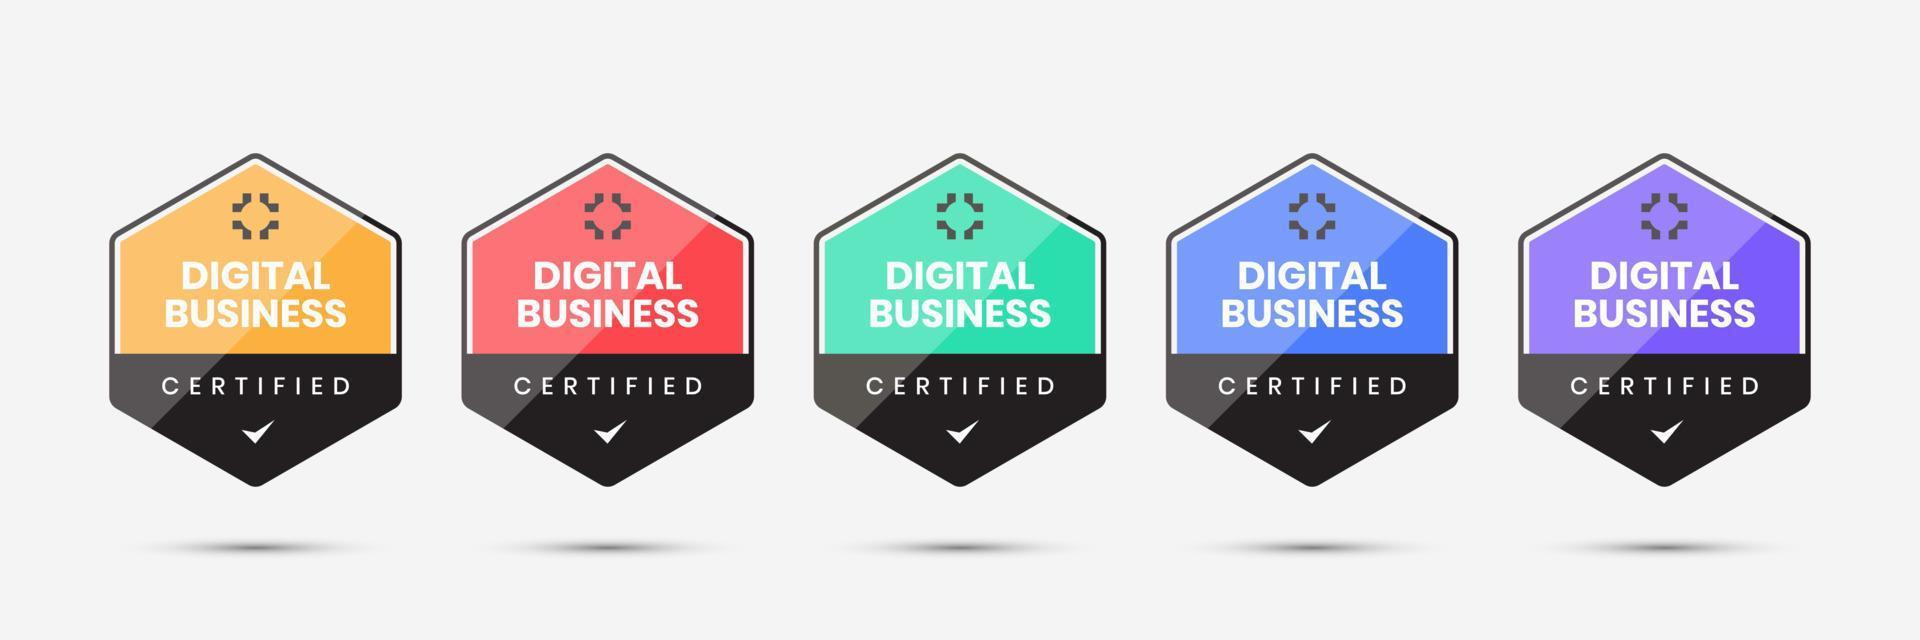 digital märkescertifiering för företagsmall vektor